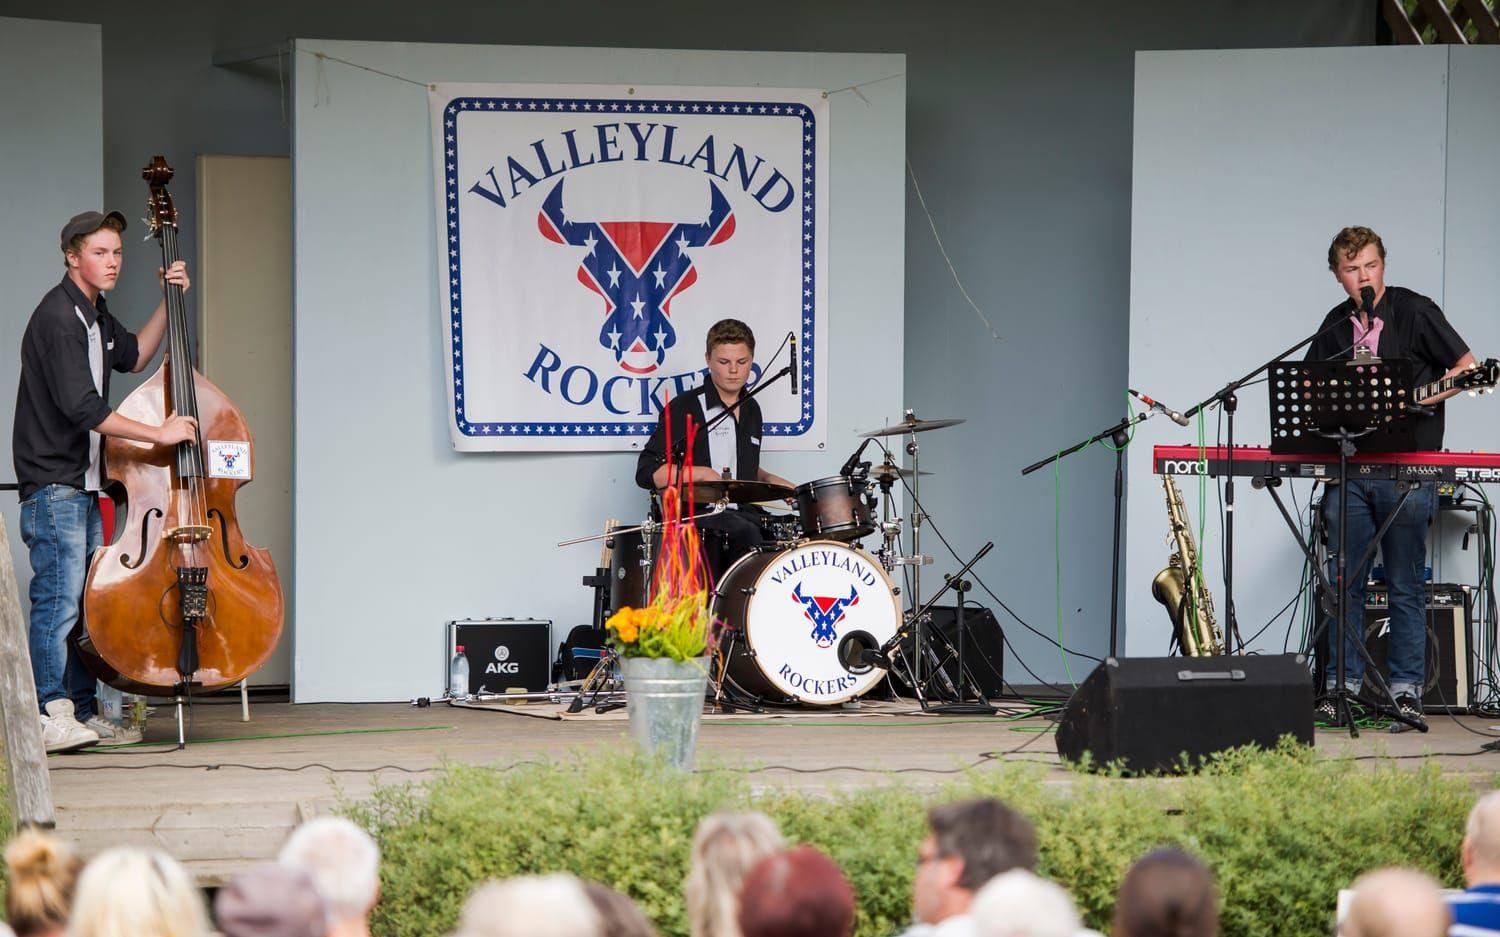 Valleyland Rockers är ett lokalt band som spelar rockabilly.